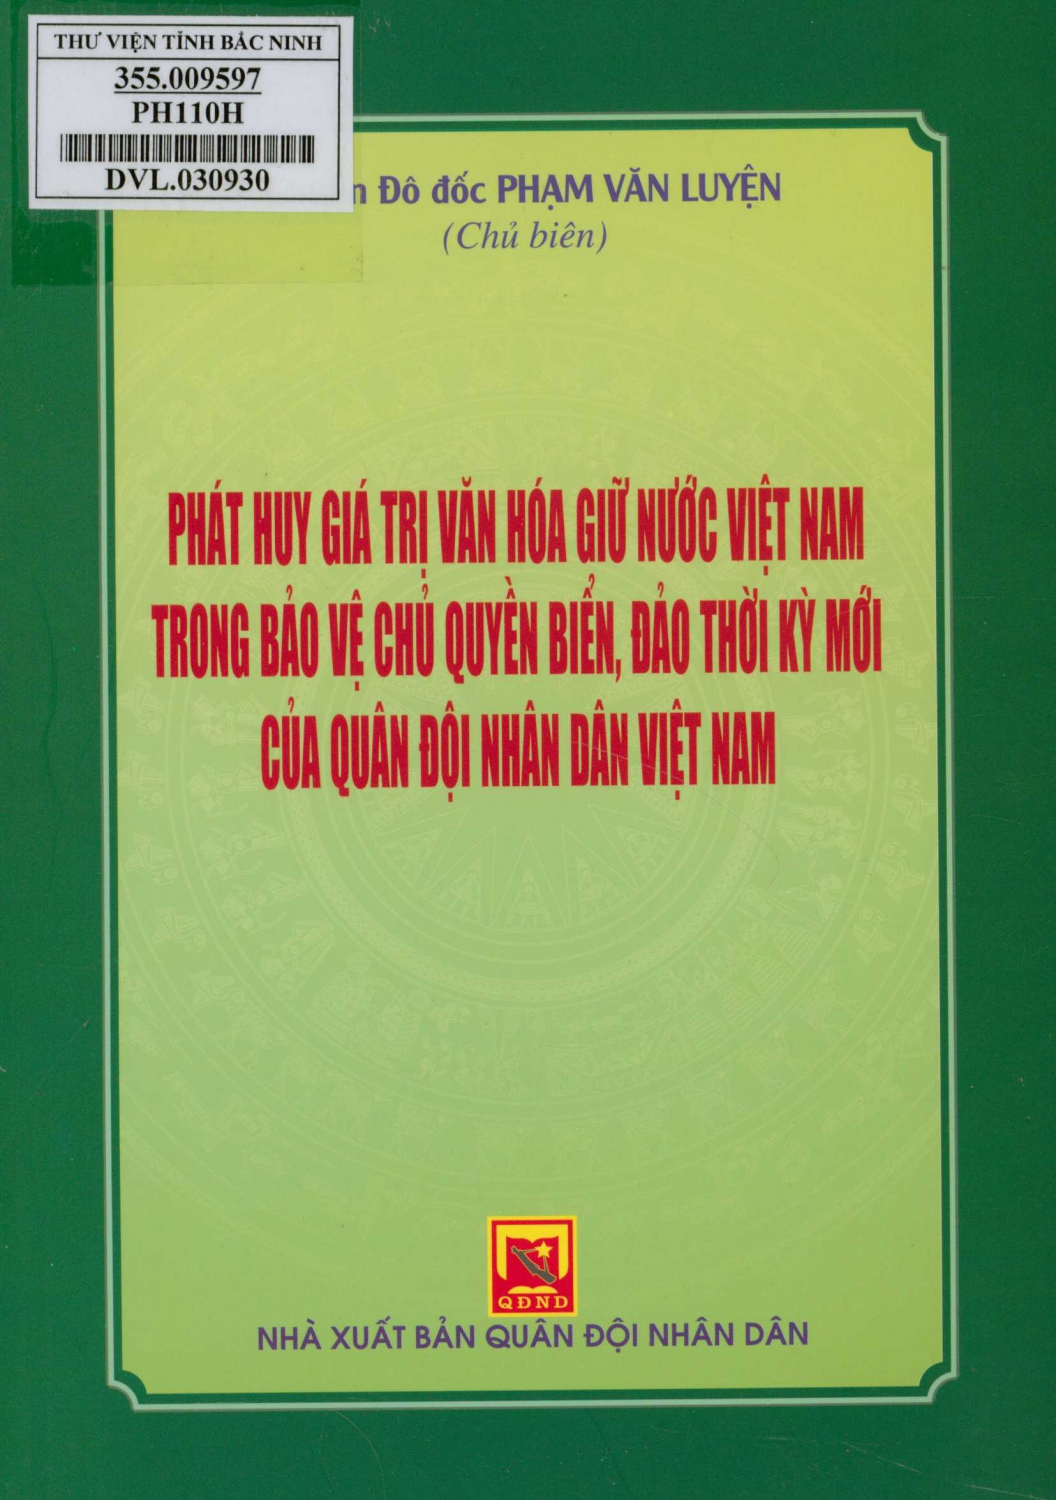 Phát huy giá trị văn hoá giữ nước Việt Nam trong bảo vệ chủ quyền biển, đảo thời kỳ mới của Quân đội nhân dân Việt Nam